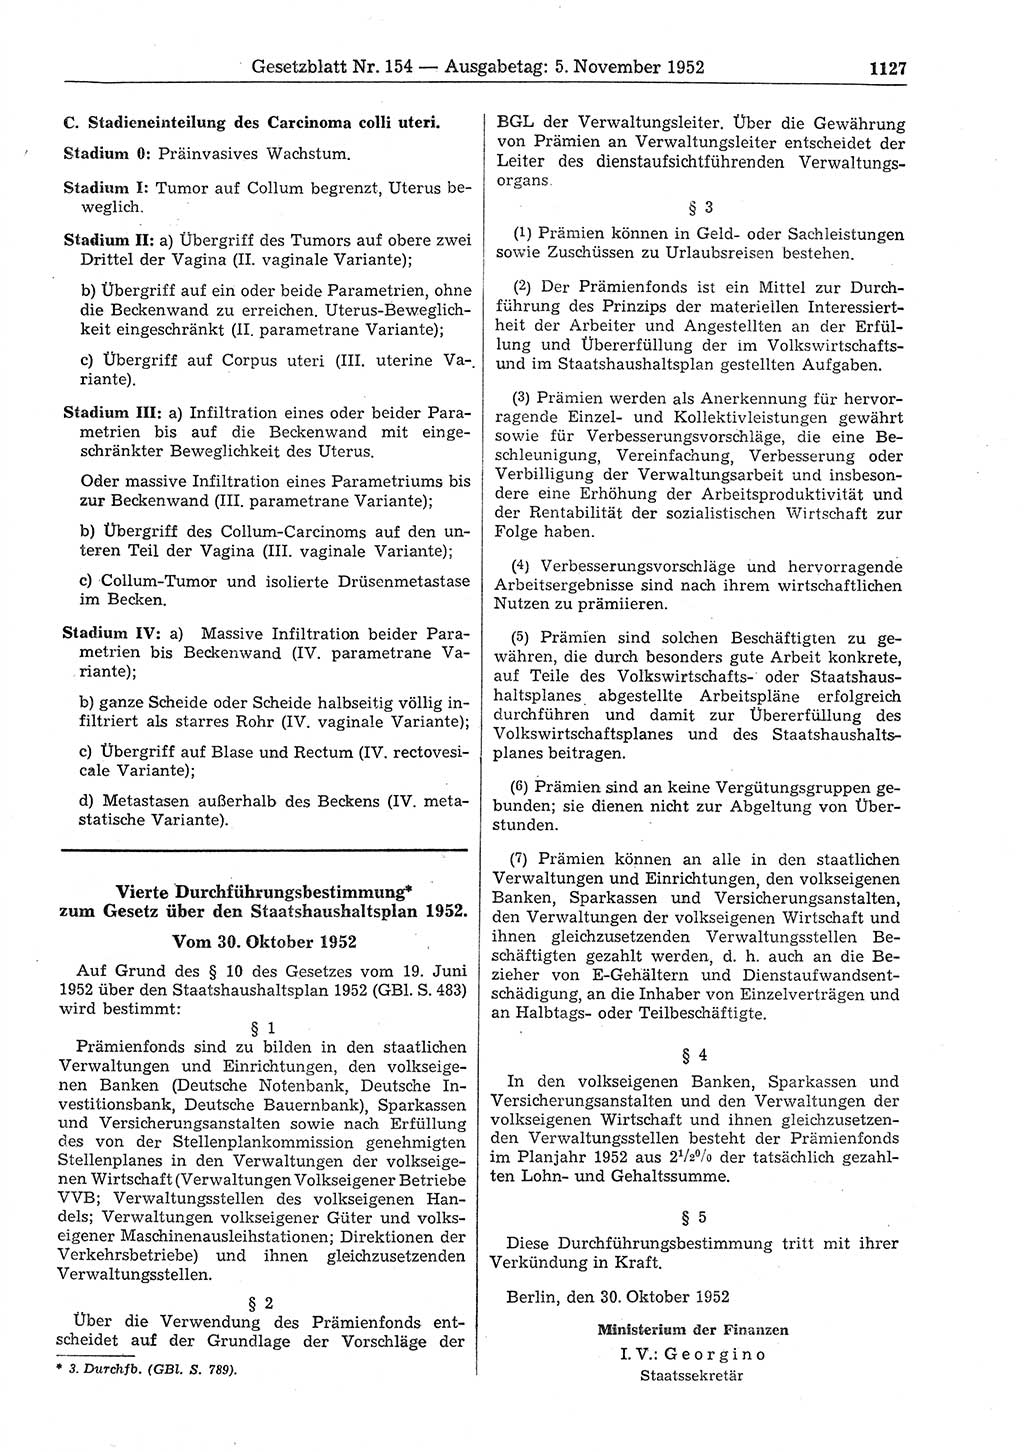 Gesetzblatt (GBl.) der Deutschen Demokratischen Republik (DDR) 1952, Seite 1127 (GBl. DDR 1952, S. 1127)